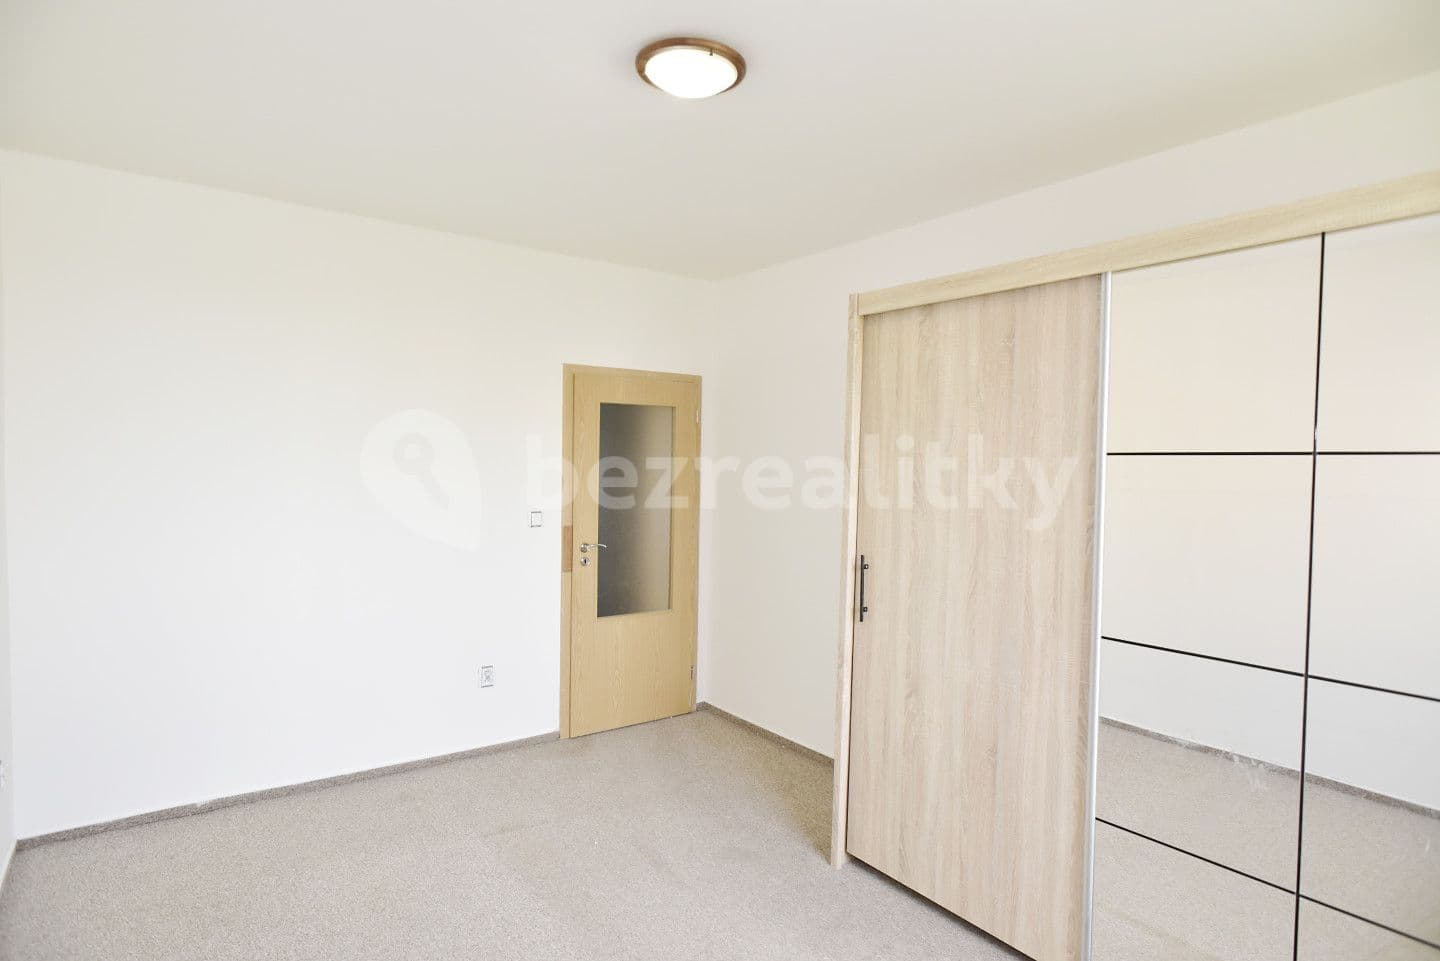 1 bedroom with open-plan kitchen flat for sale, 47 m², Buková, Jihlava, Vysočina Region